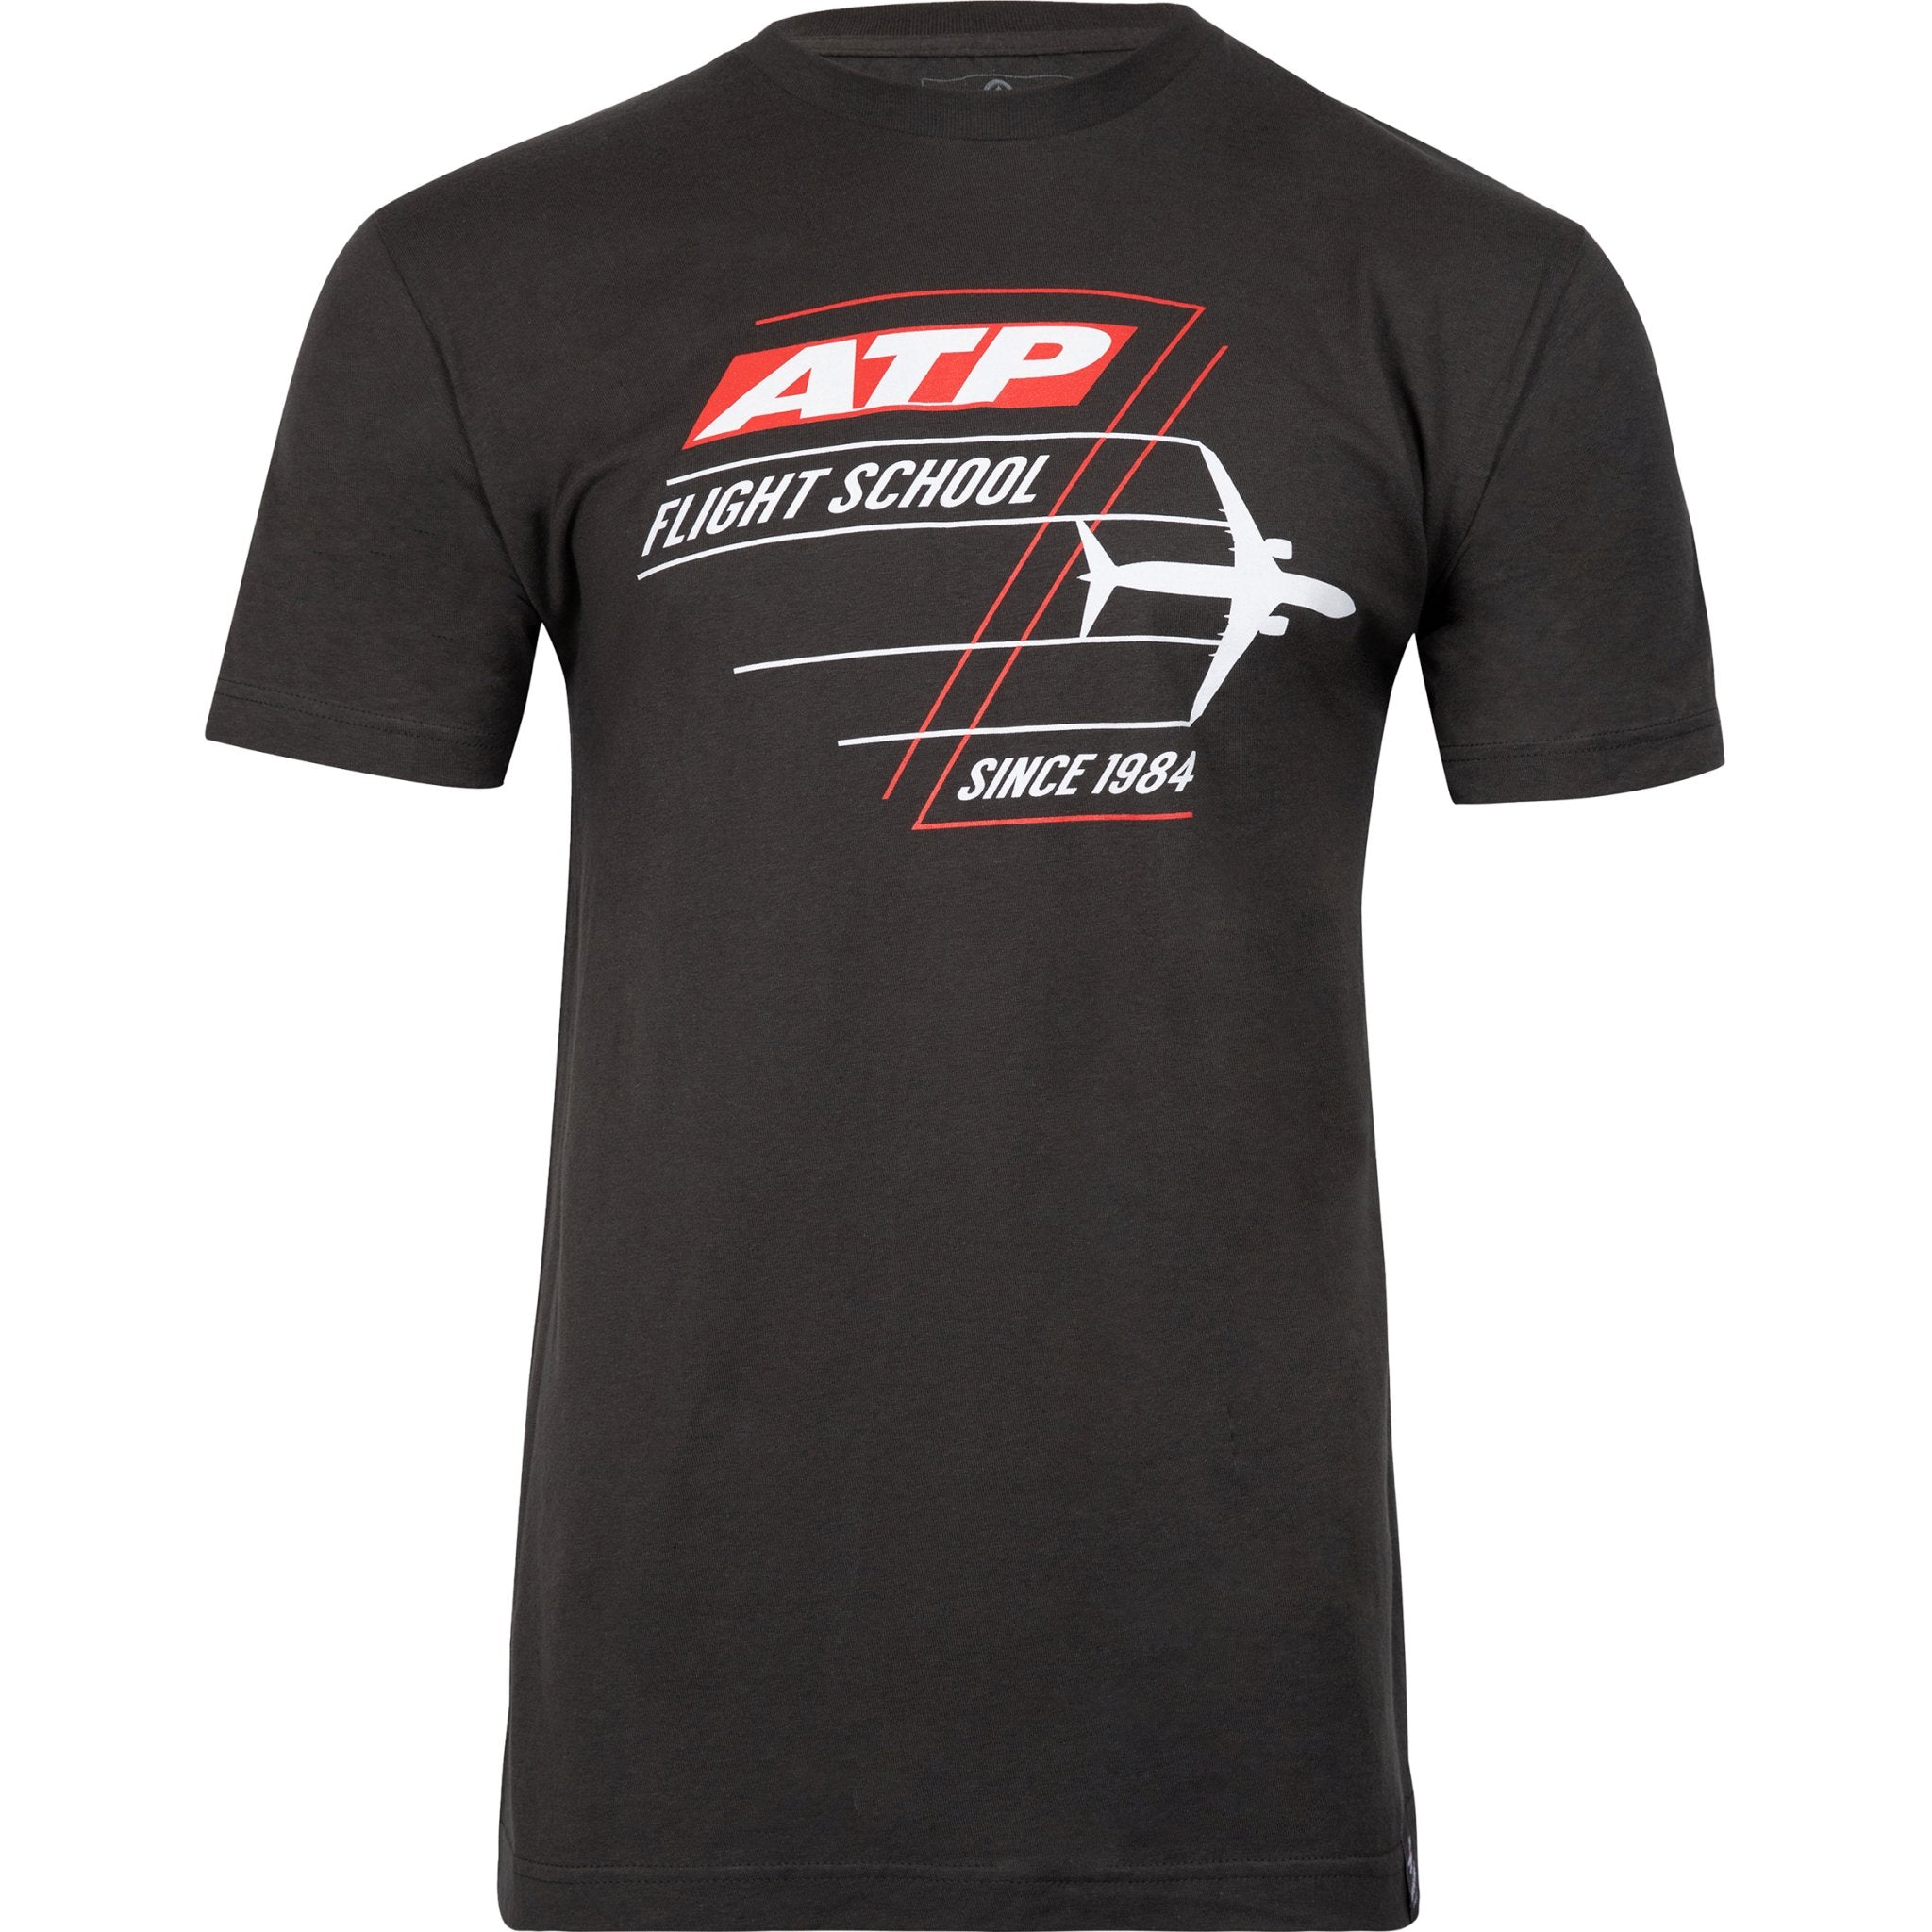 ATP Since 1984 T-Shirt - PilotMall.com